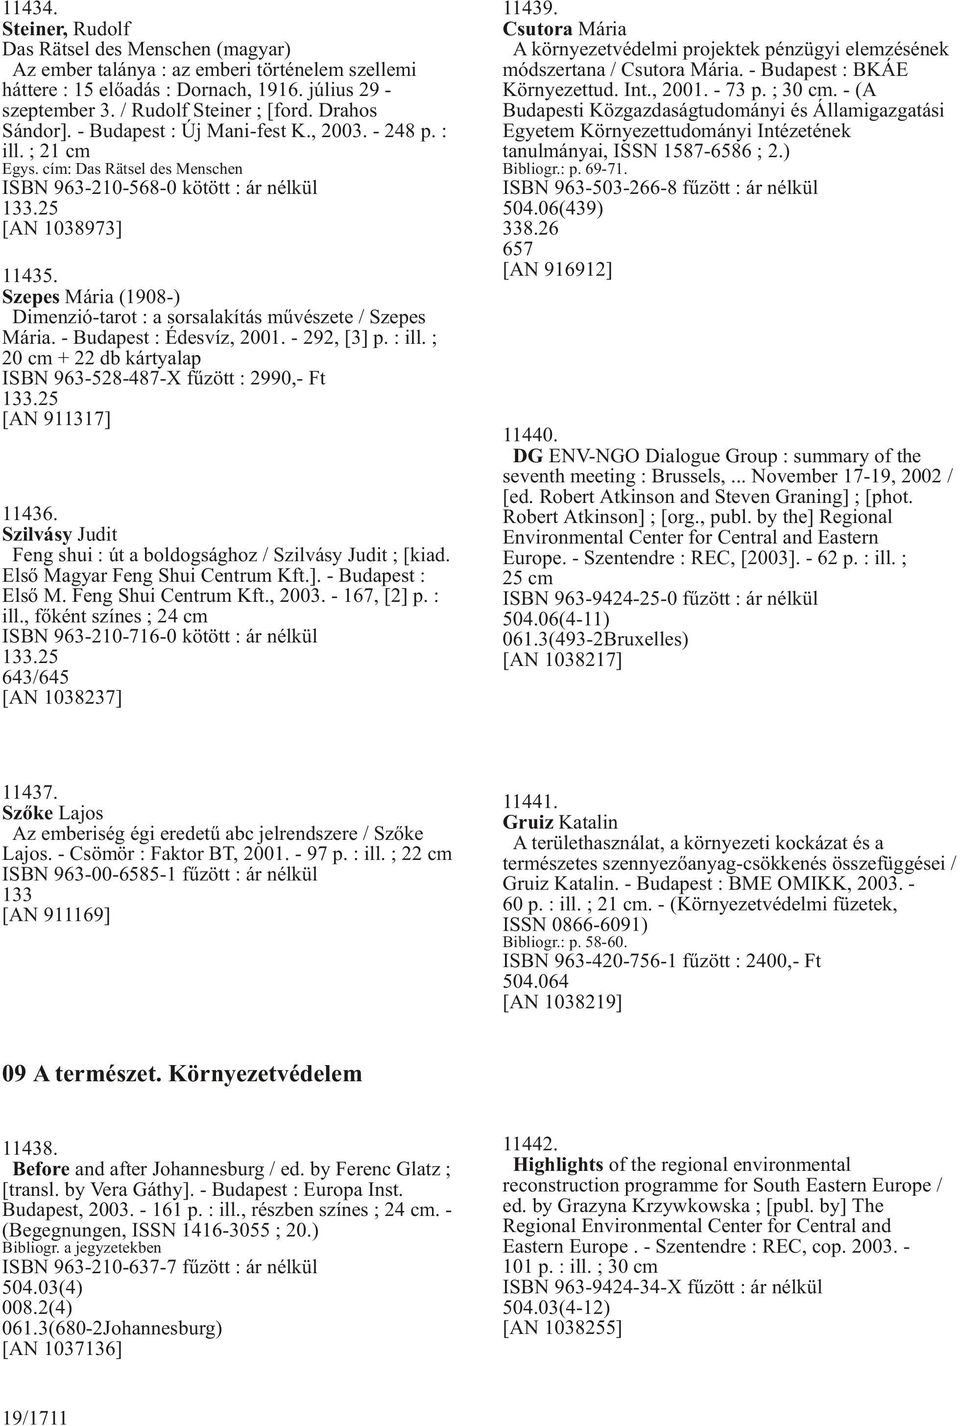 Szepes Mária (1908-) Dimenzió-tarot : a sorsalakítás mûvészete / Szepes Mária. - Budapest : Édesvíz, 2001. - 292, [3] p. : ill. ; 20 cm + 22 db kártyalap ISBN 963-528-487-X fûzött : 2990,- Ft 133.